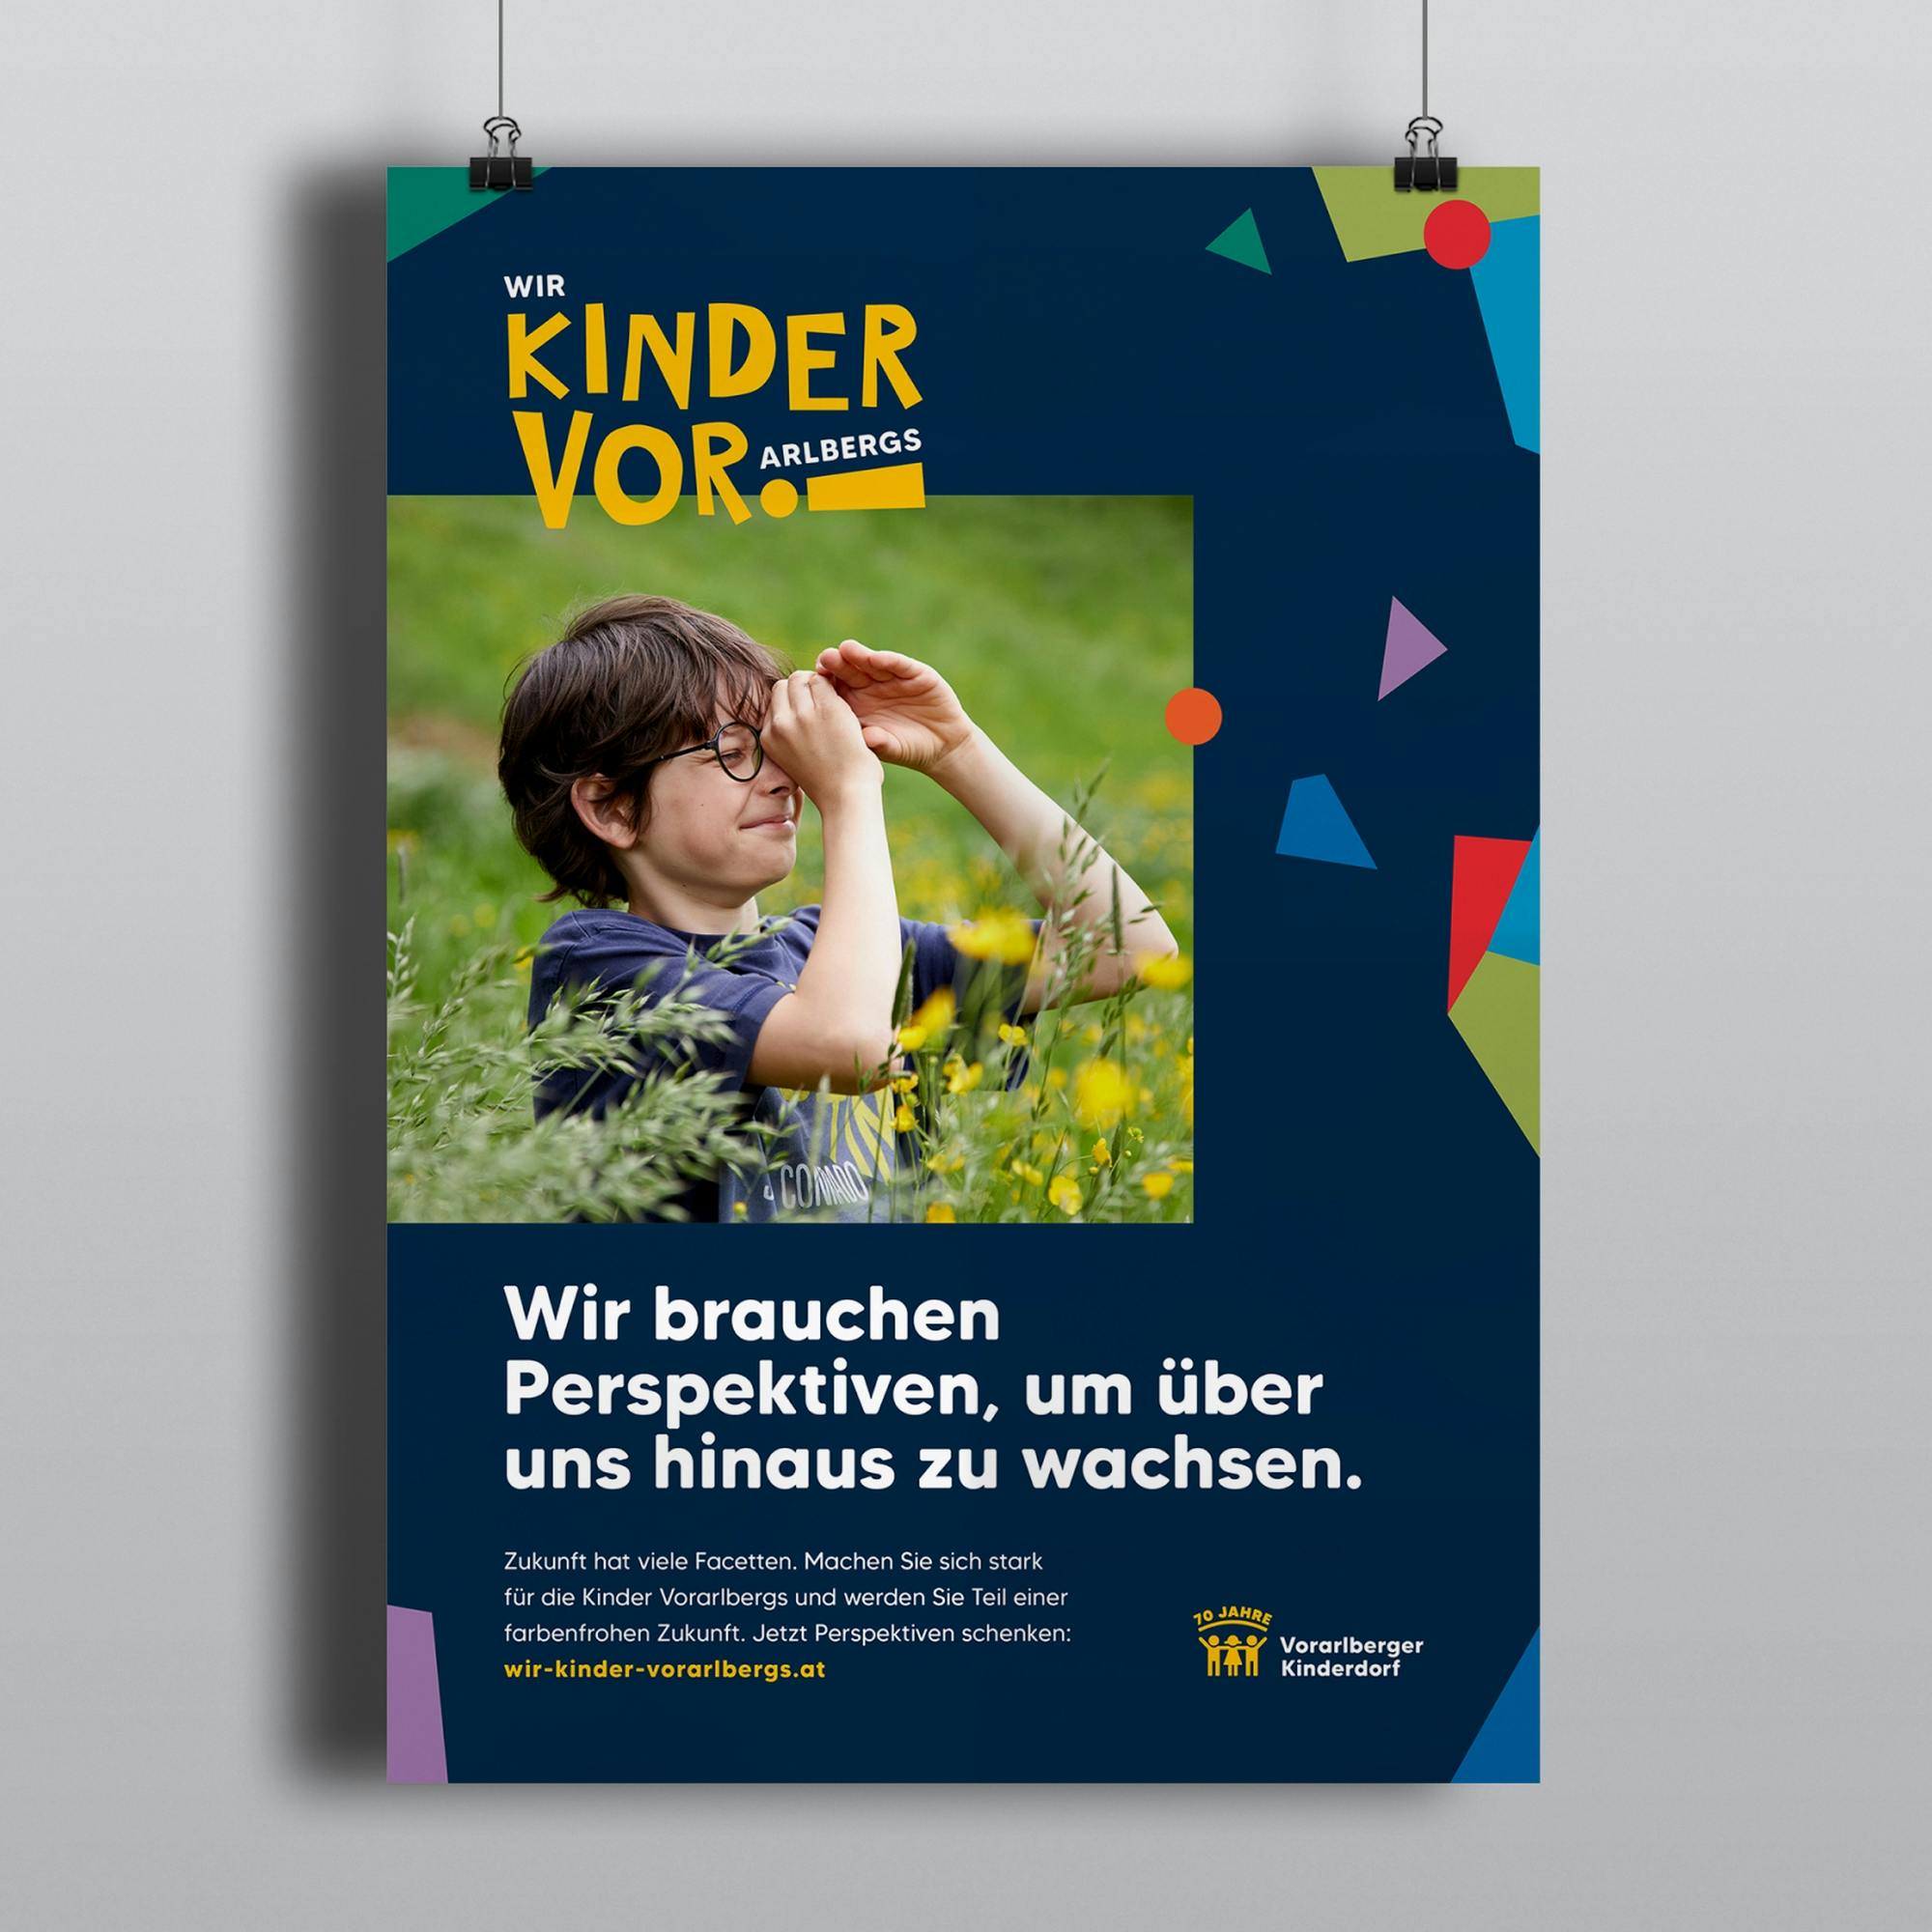 Plakat für die Vorarlberger Kinderdorf Kampagne "Wir Kinder Vorarlbergs" mit einem Jungen der seine Hände hält wie ein Kaleidoskop und einer Headline zum Thema Perspektiven © gobiq